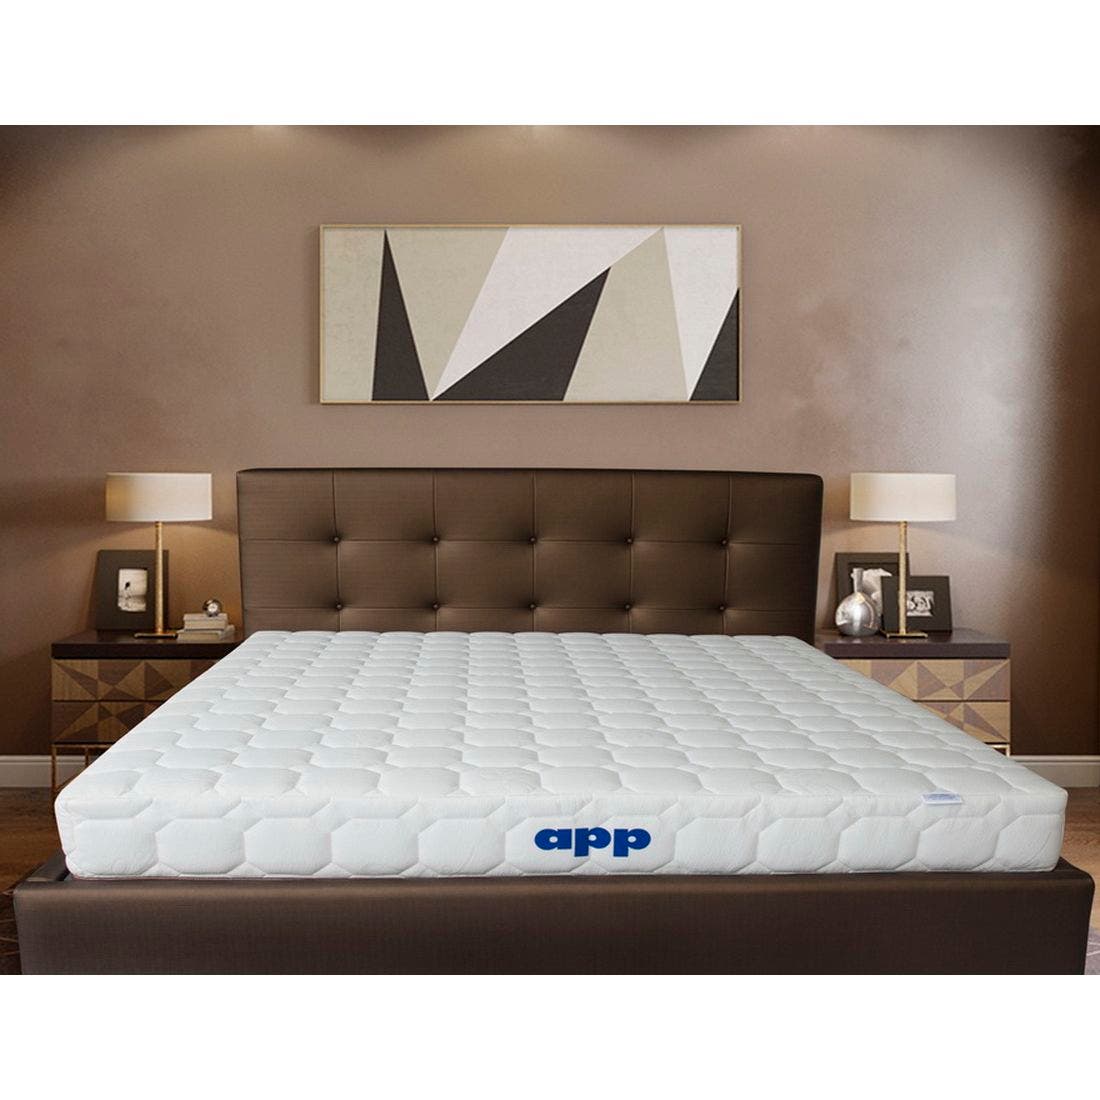 39015121-mattress-bedding-mattresses-foam-mattresses-31